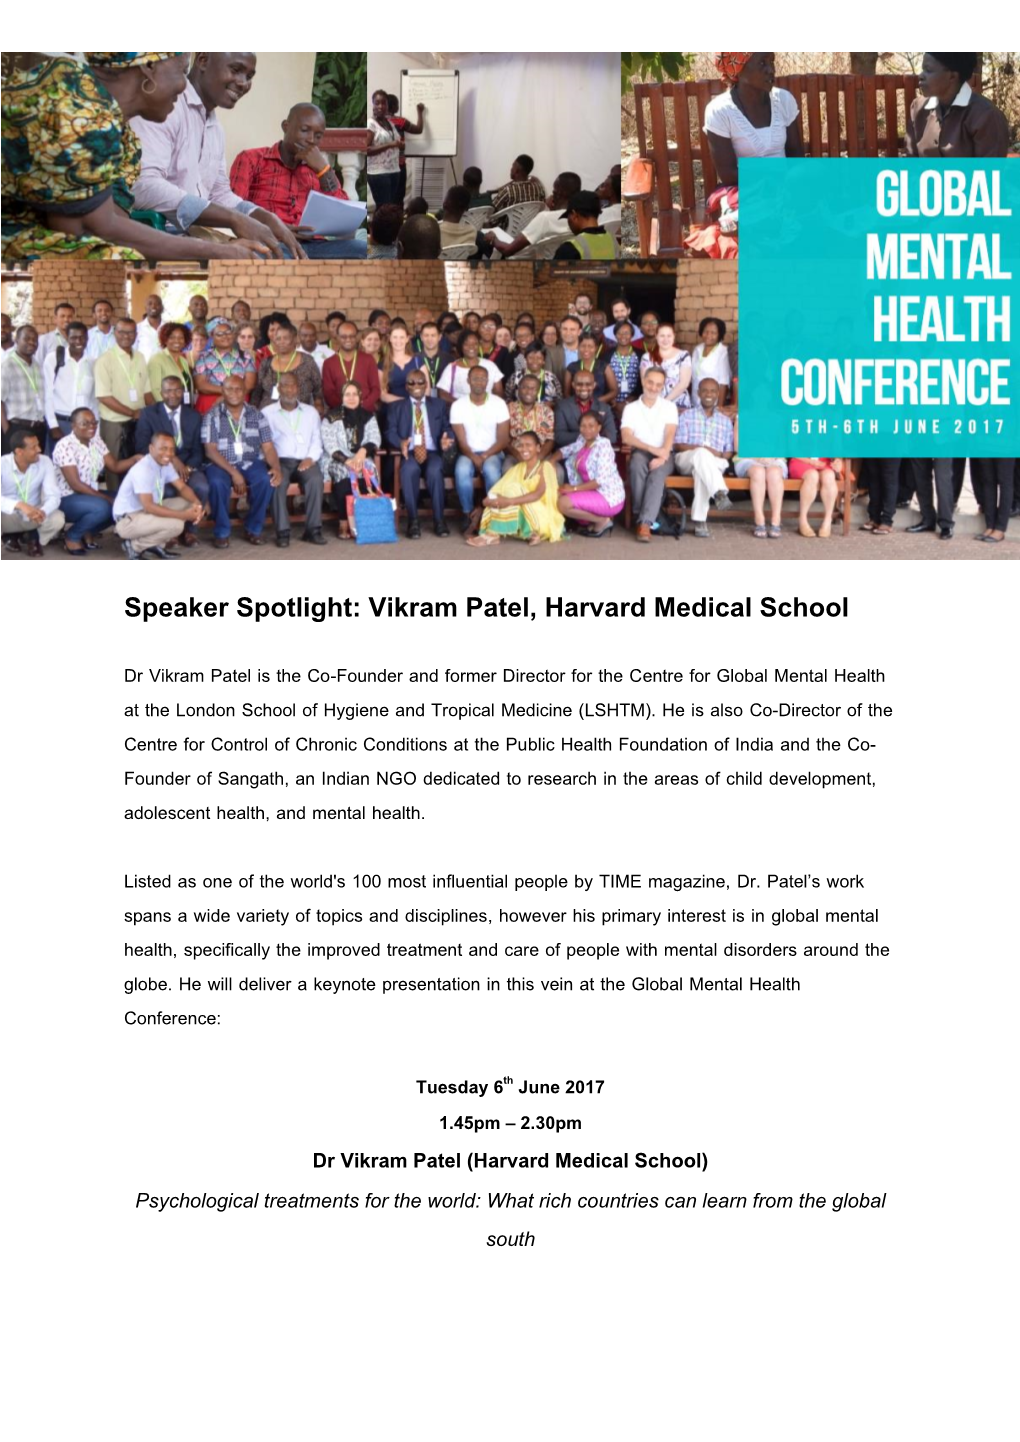 Speaker Spotlight: Vikram Patel, Harvard Medical School